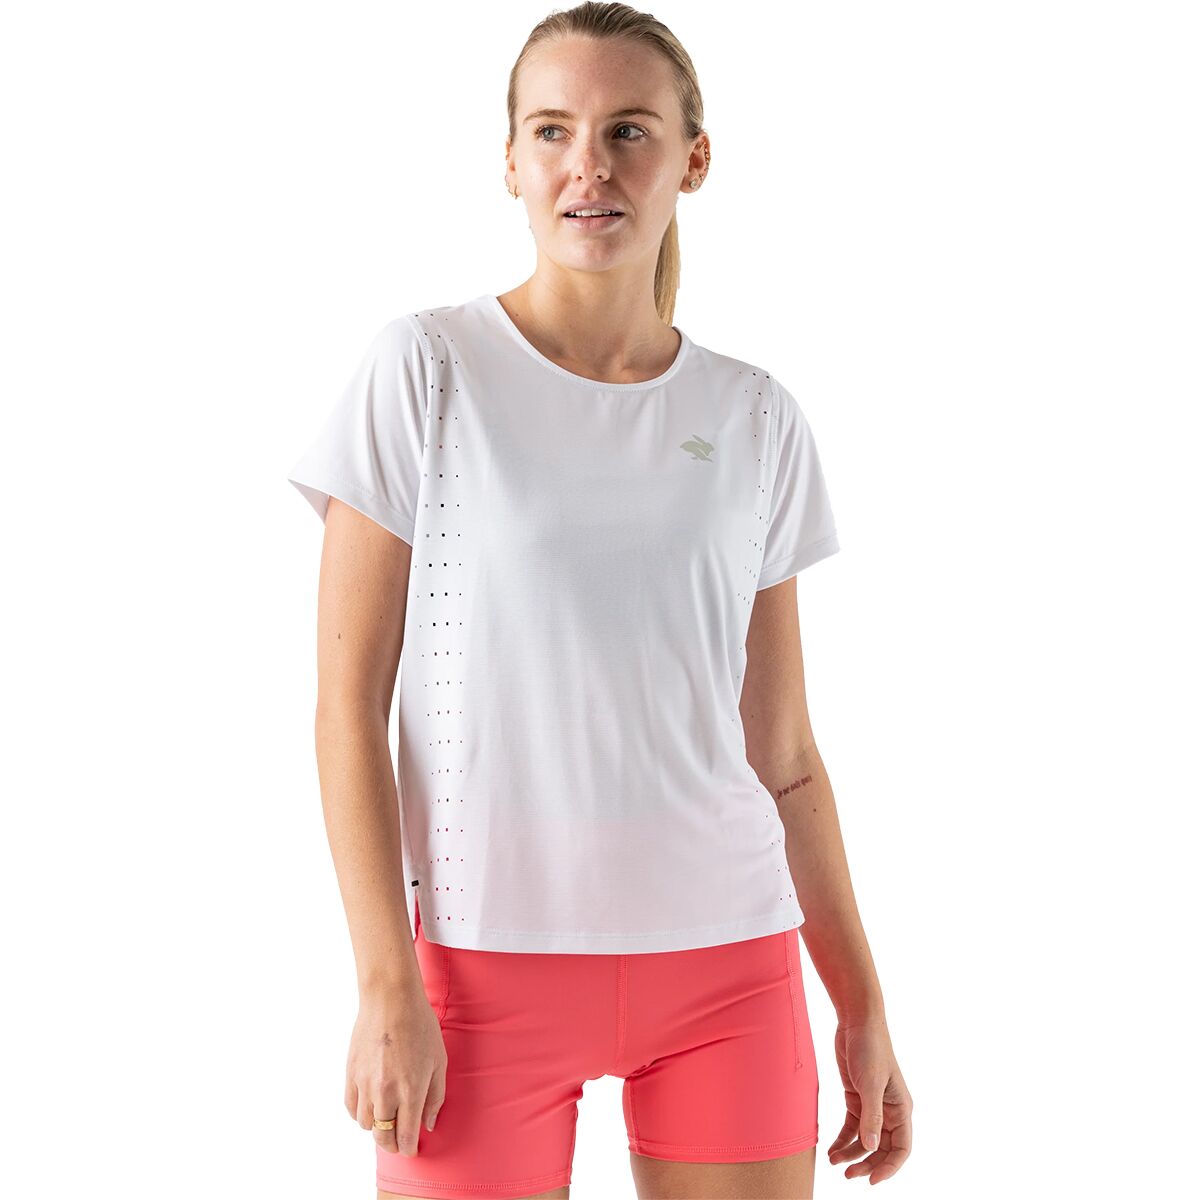 Race Pace Short-Sleeve T-Shirt - Women